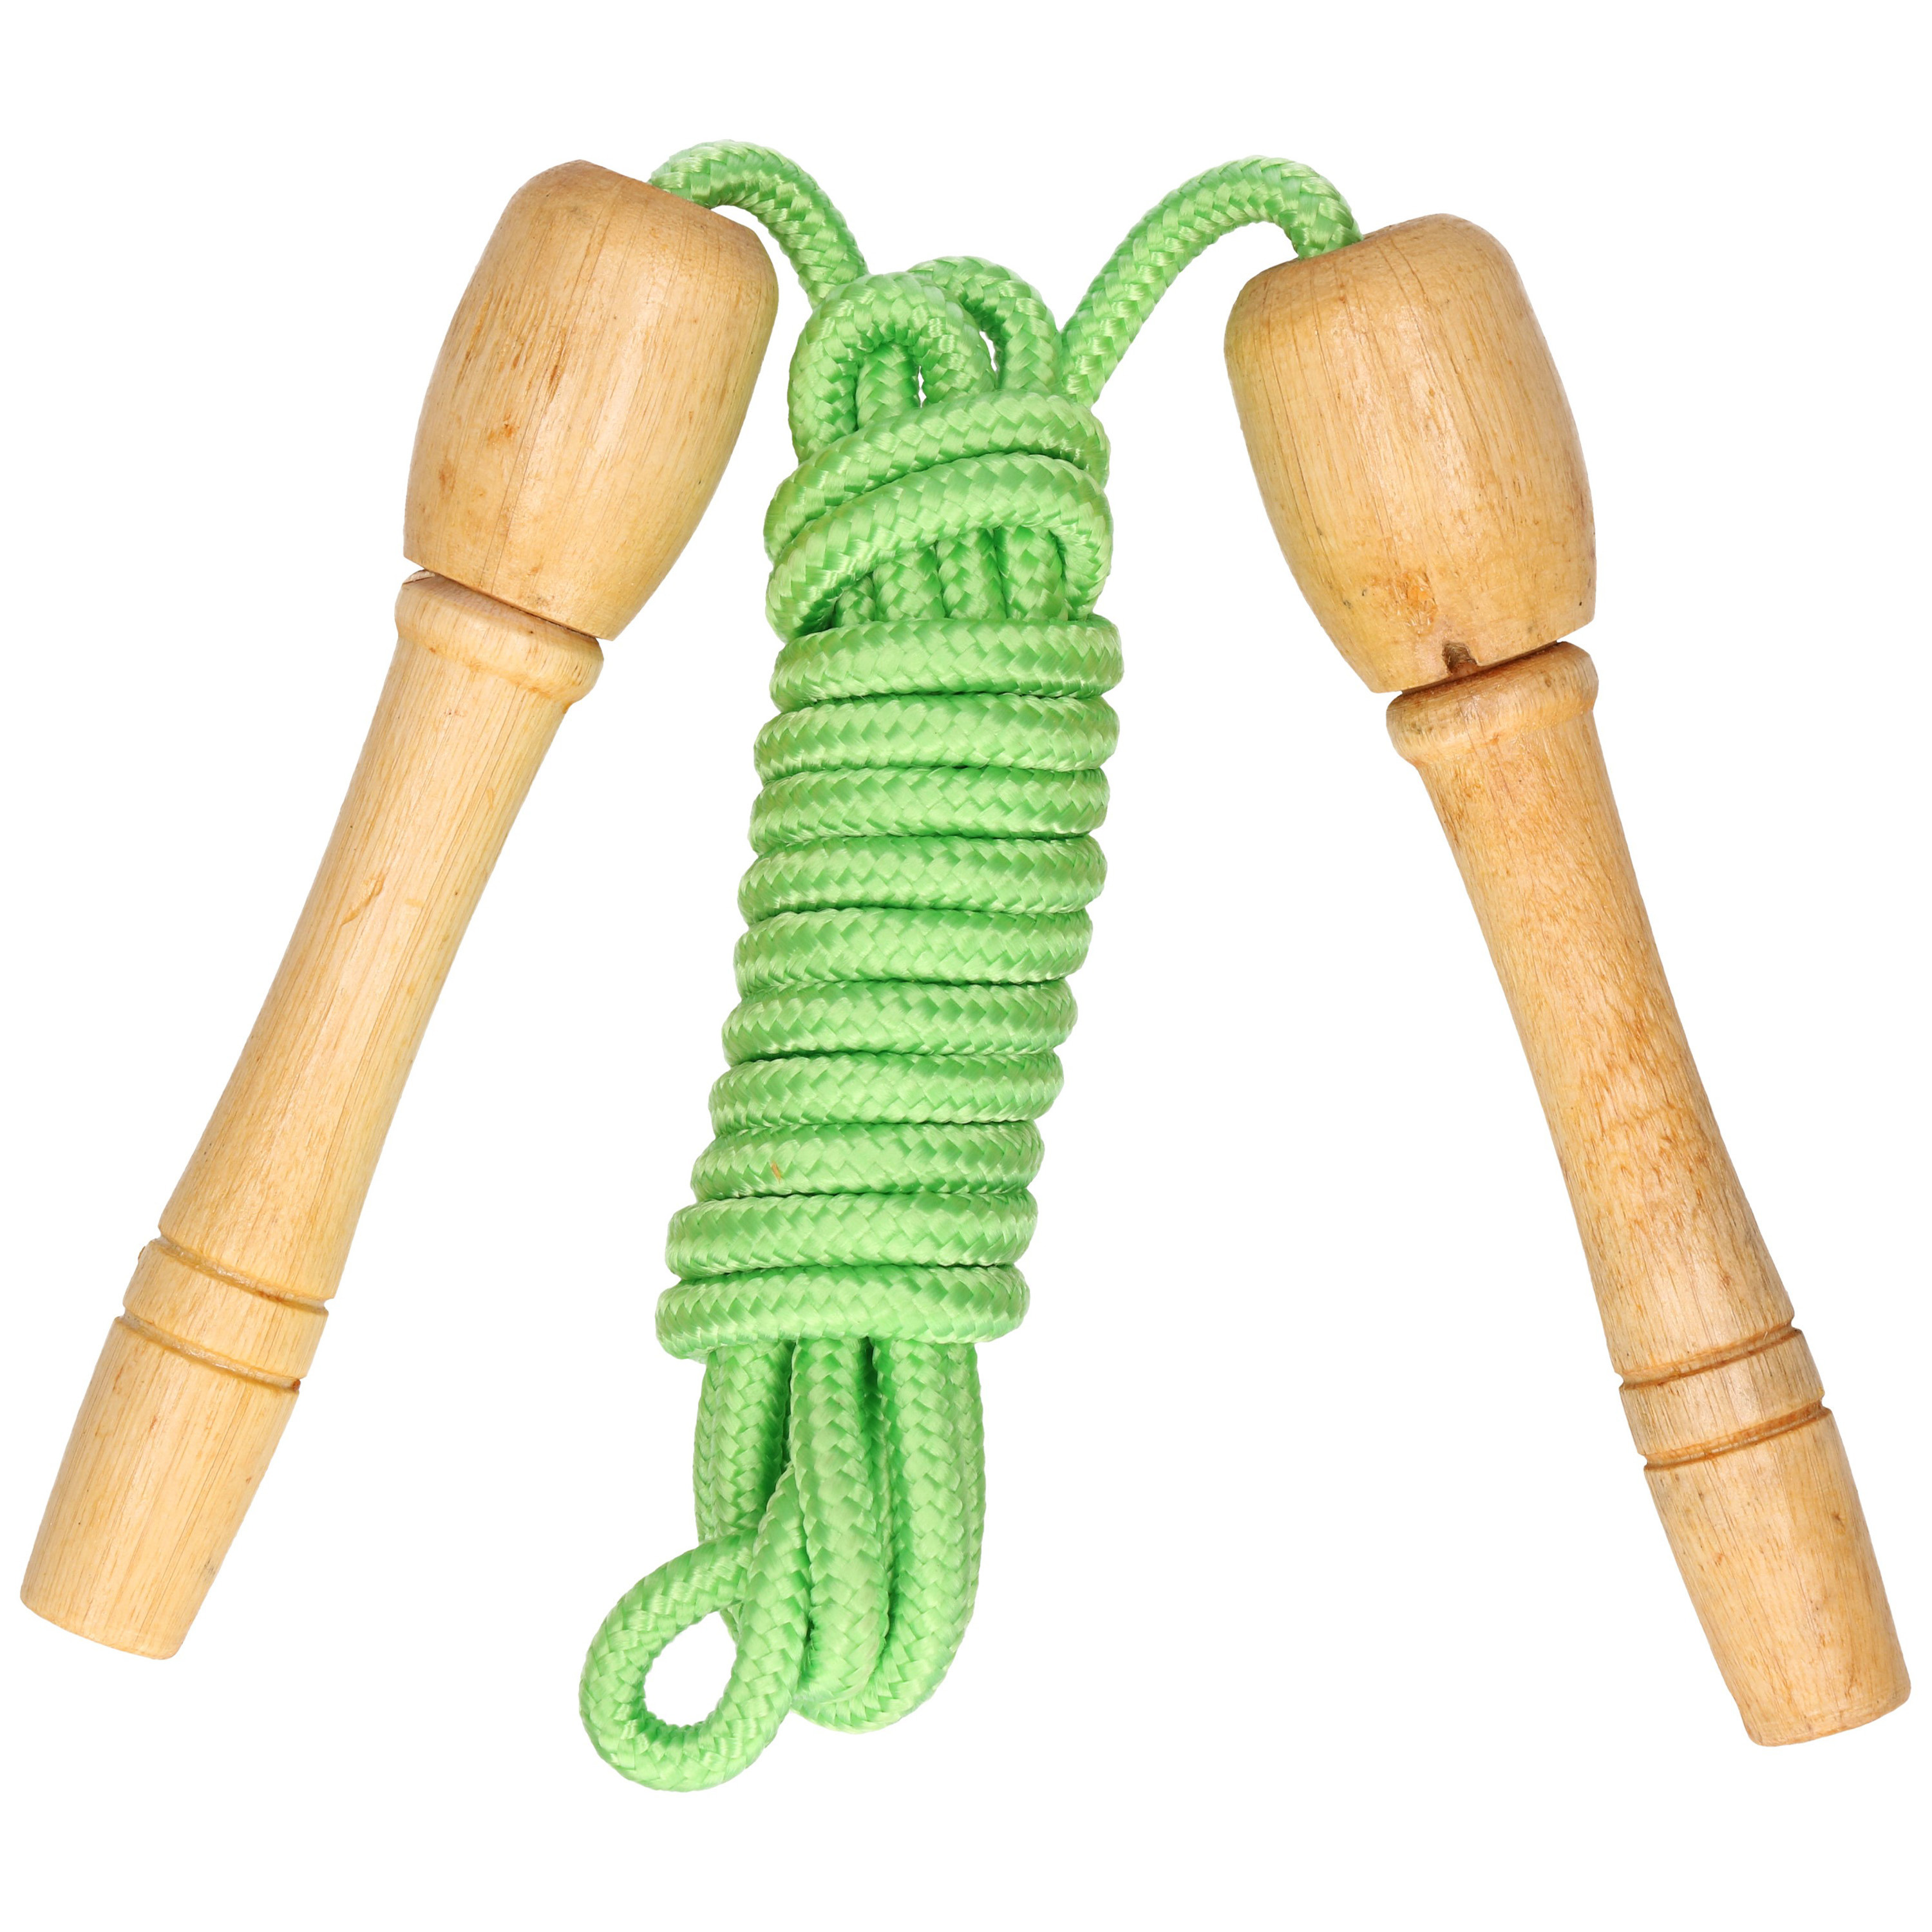 Springtouw speelgoed met houten handvat - groen - 240 cm - buitenspeelgoed